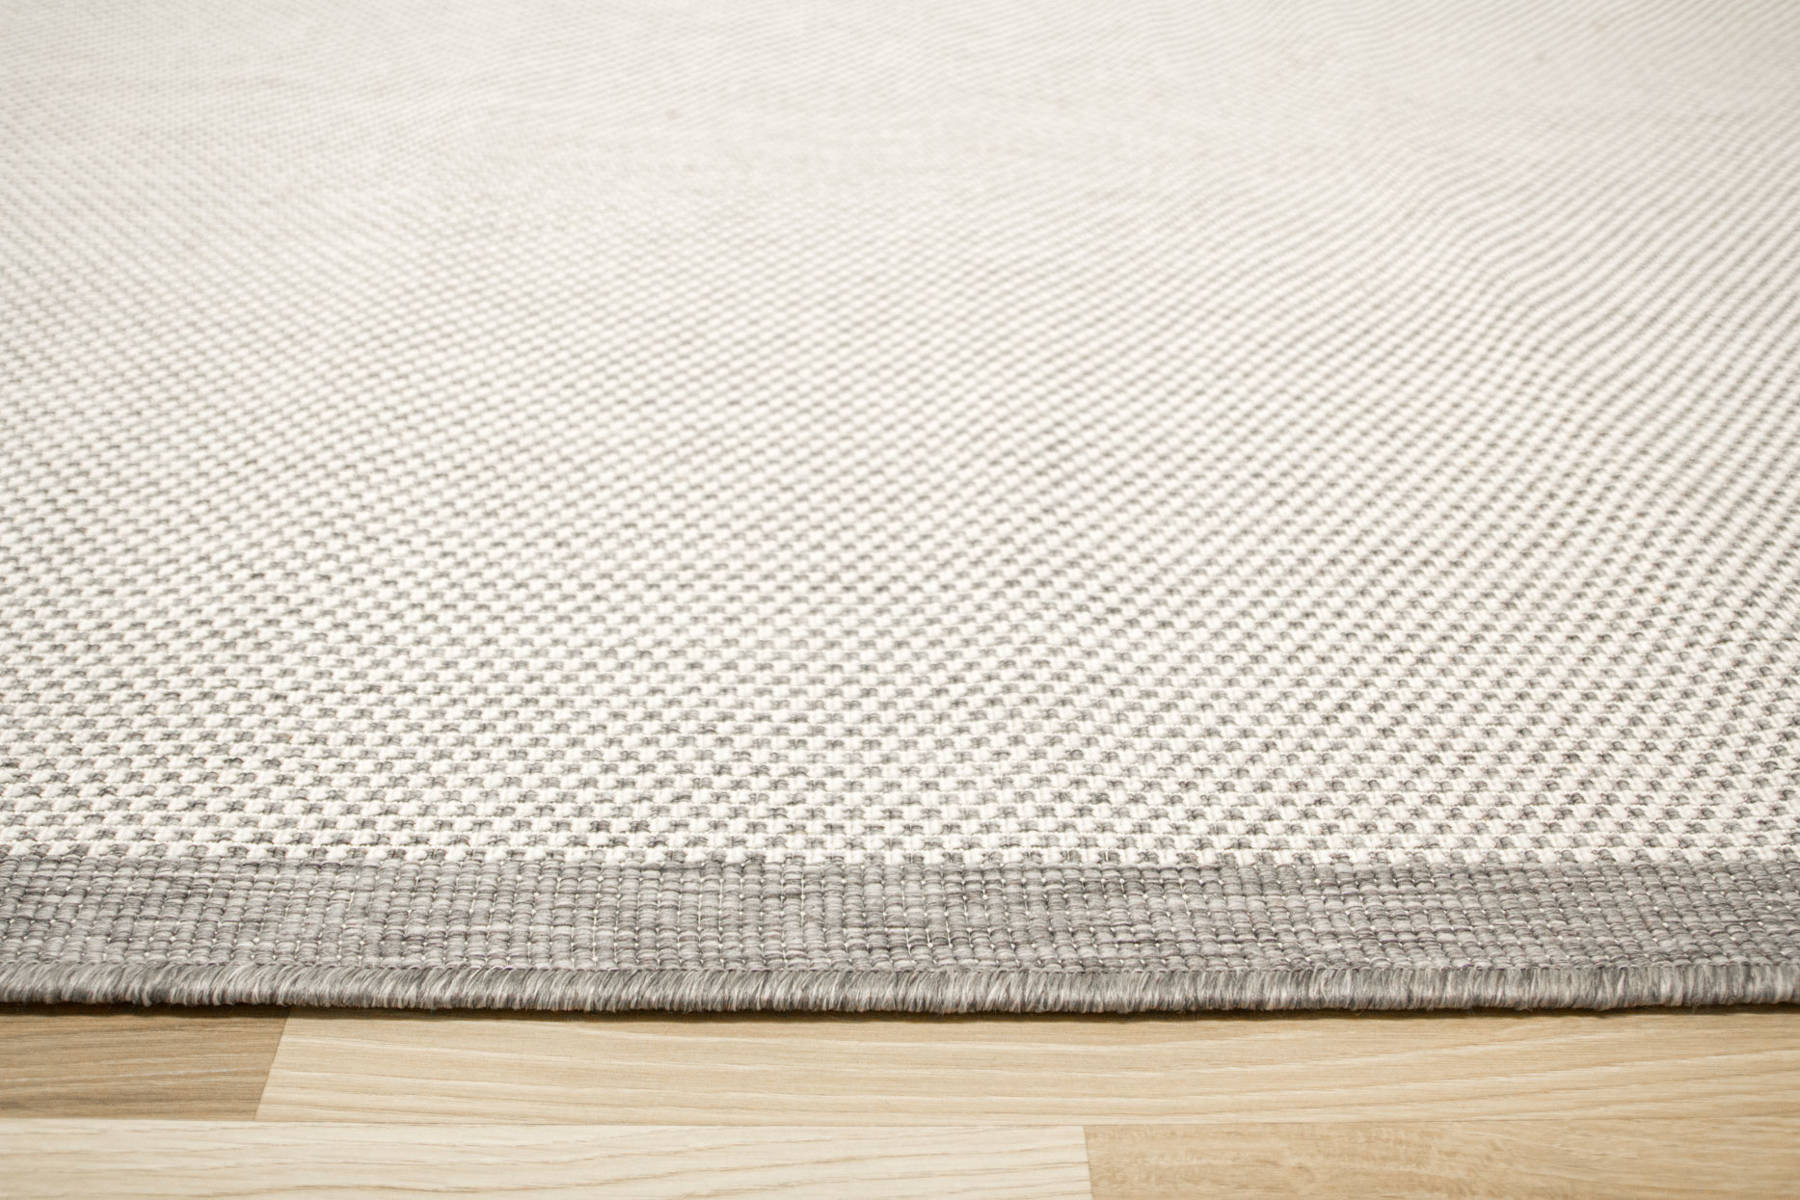 Šňůrkový oboustranný koberec Brussels 205014/10010 stříbrný romby